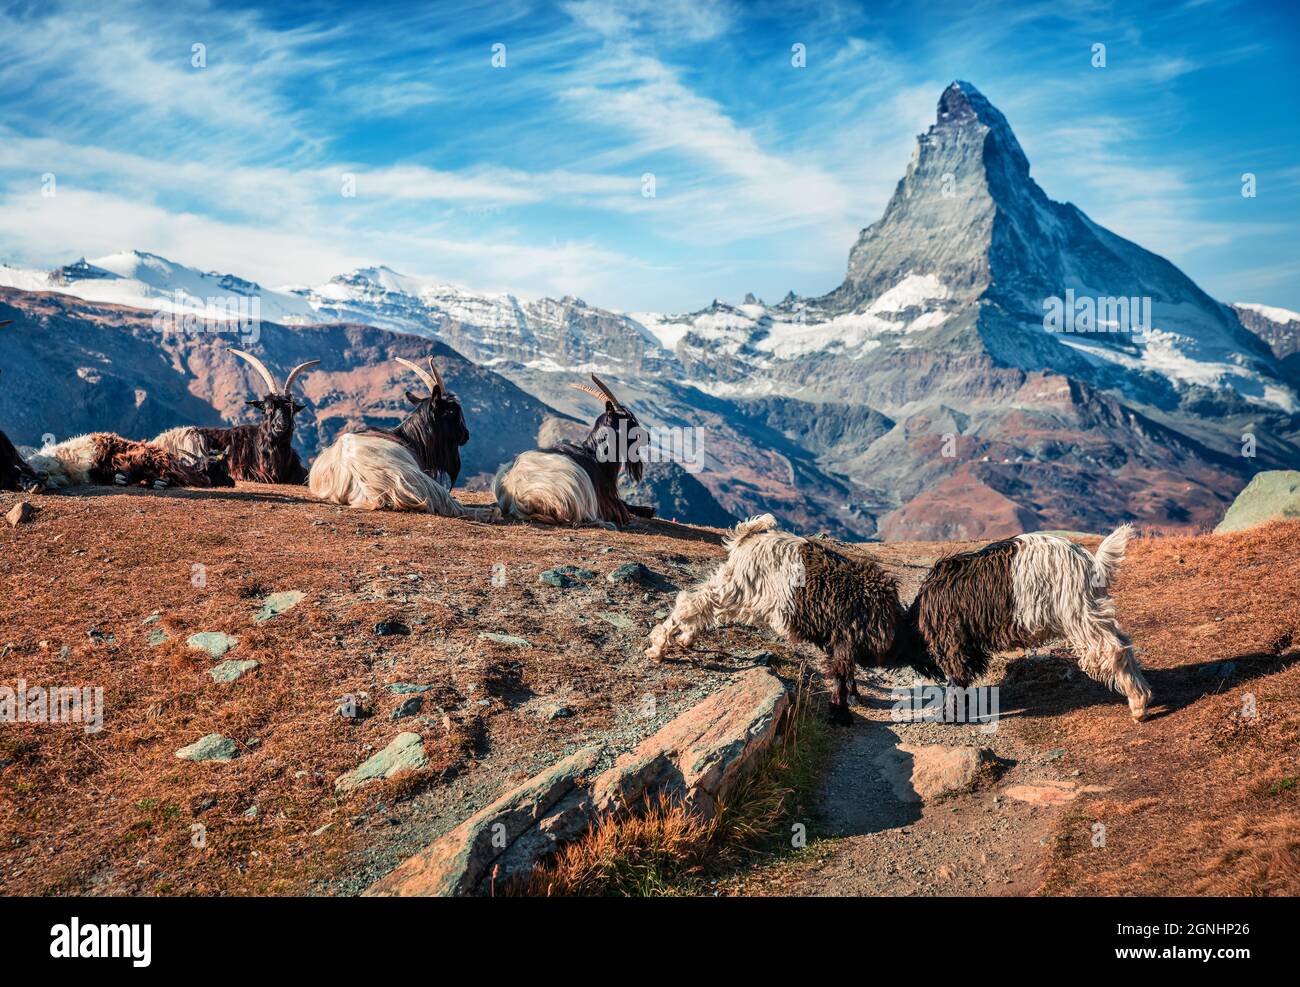 Capre bianche e nere con il picco del Cervino sullo sfondo. Pittoresca scena autunnale delle Alpi svizzere, località di Zermatt, Svizzera, Europa. Abbellito Foto Stock